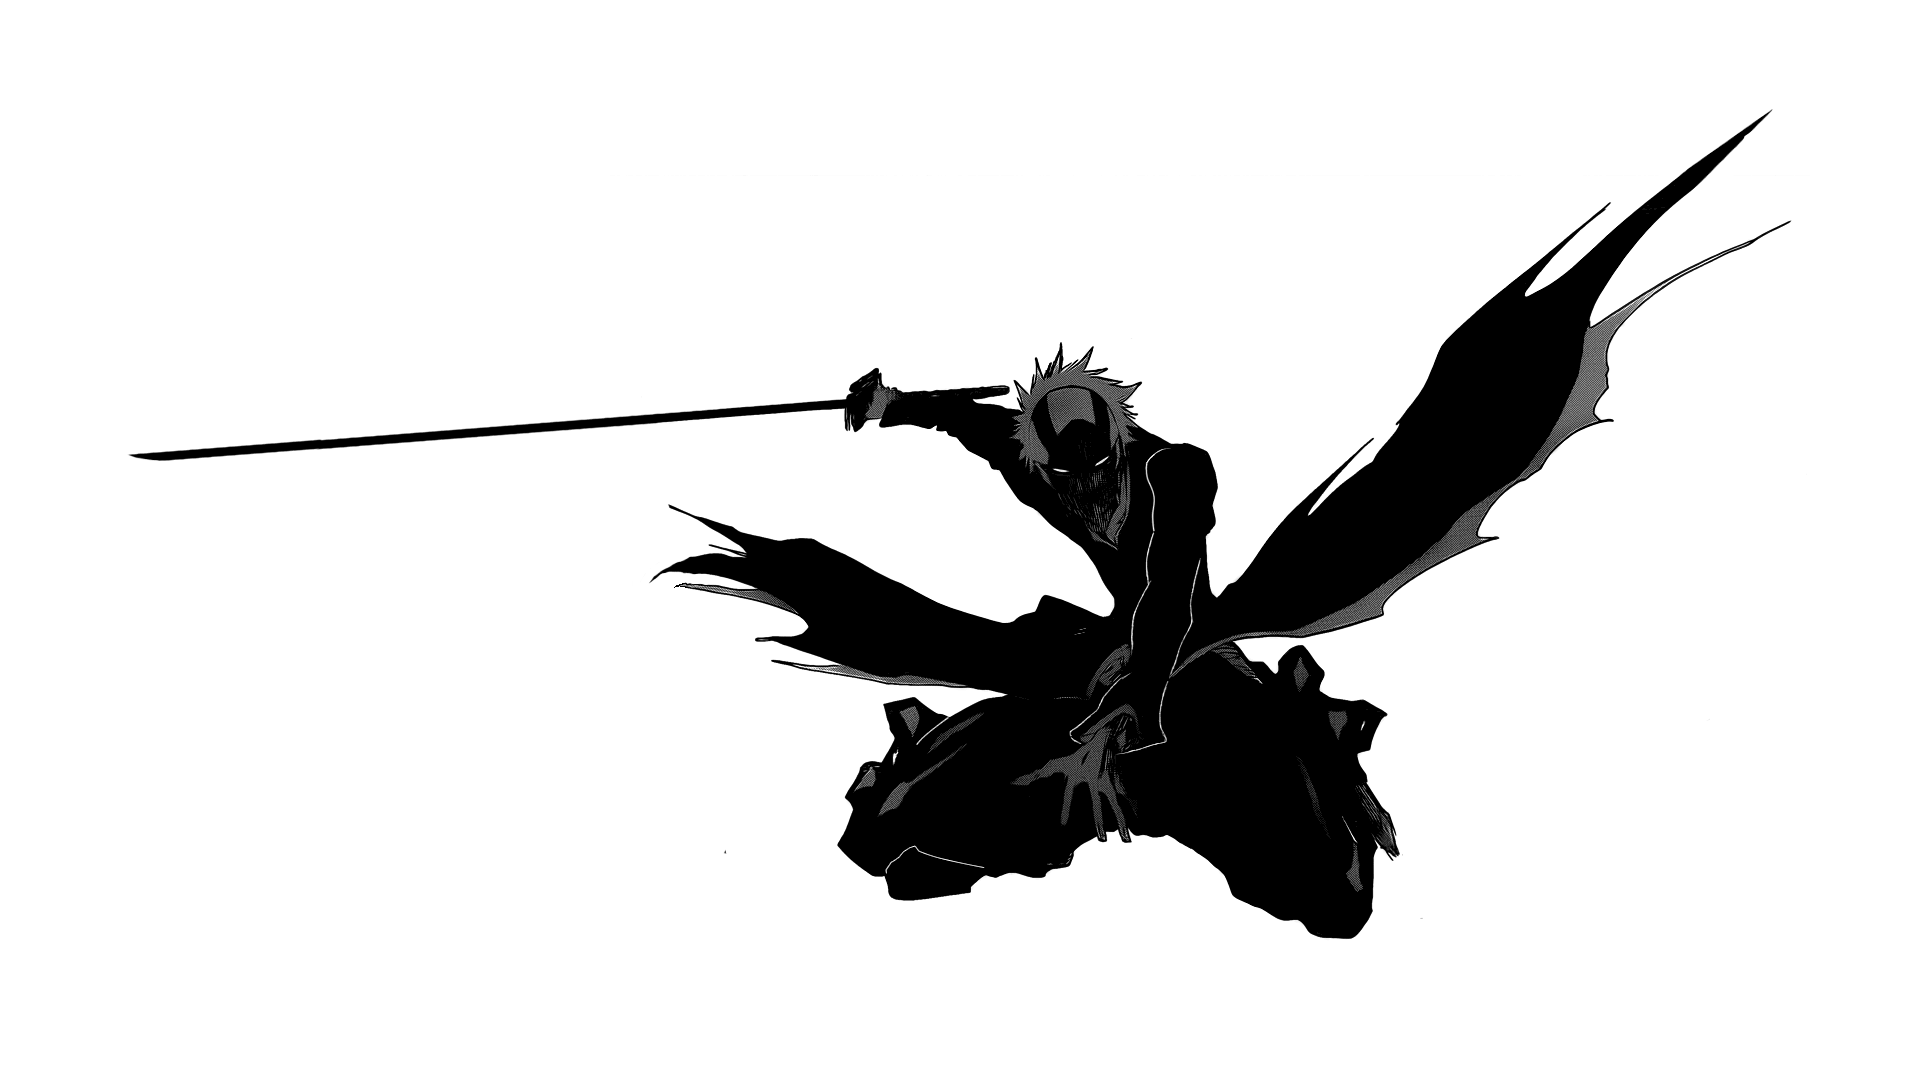 Anime 1920x1080 Bleach anime monochrome warrior simple background white background bankai Kurosaki Ichigo